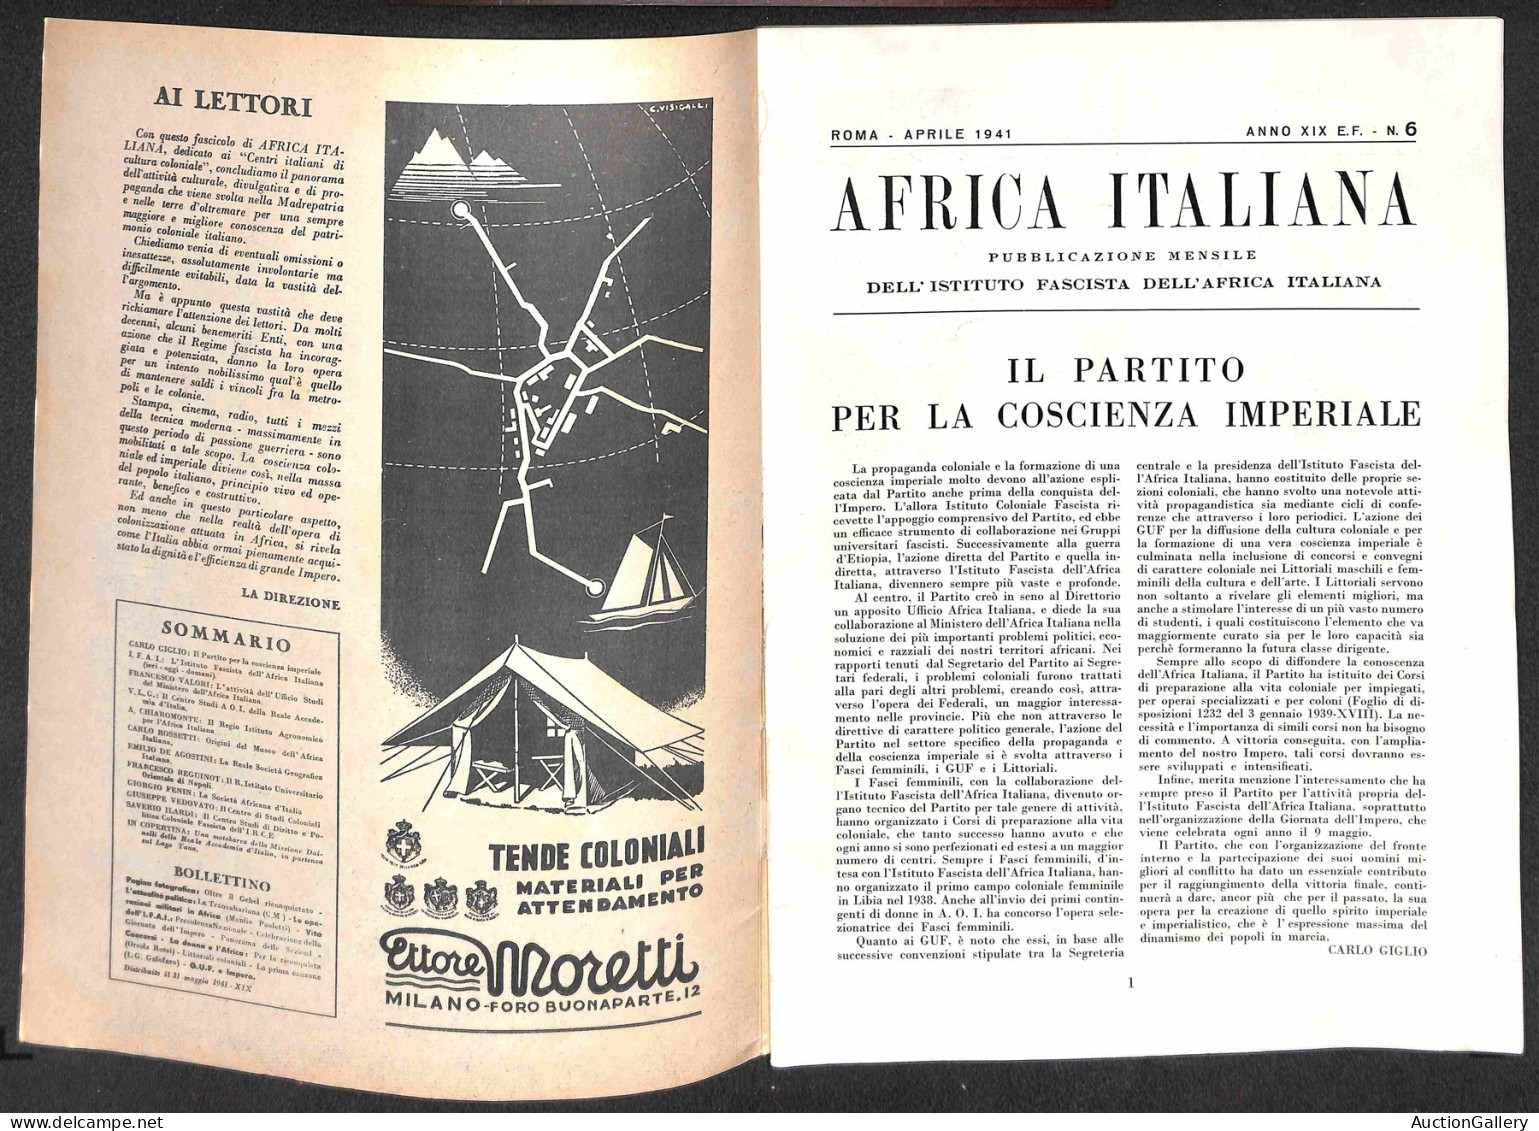 Prefilateliche e Documenti - Italia - 1941 (marzo/luglio) - Africa Italiana - quattro fascicoli della rivista (29/33 - n